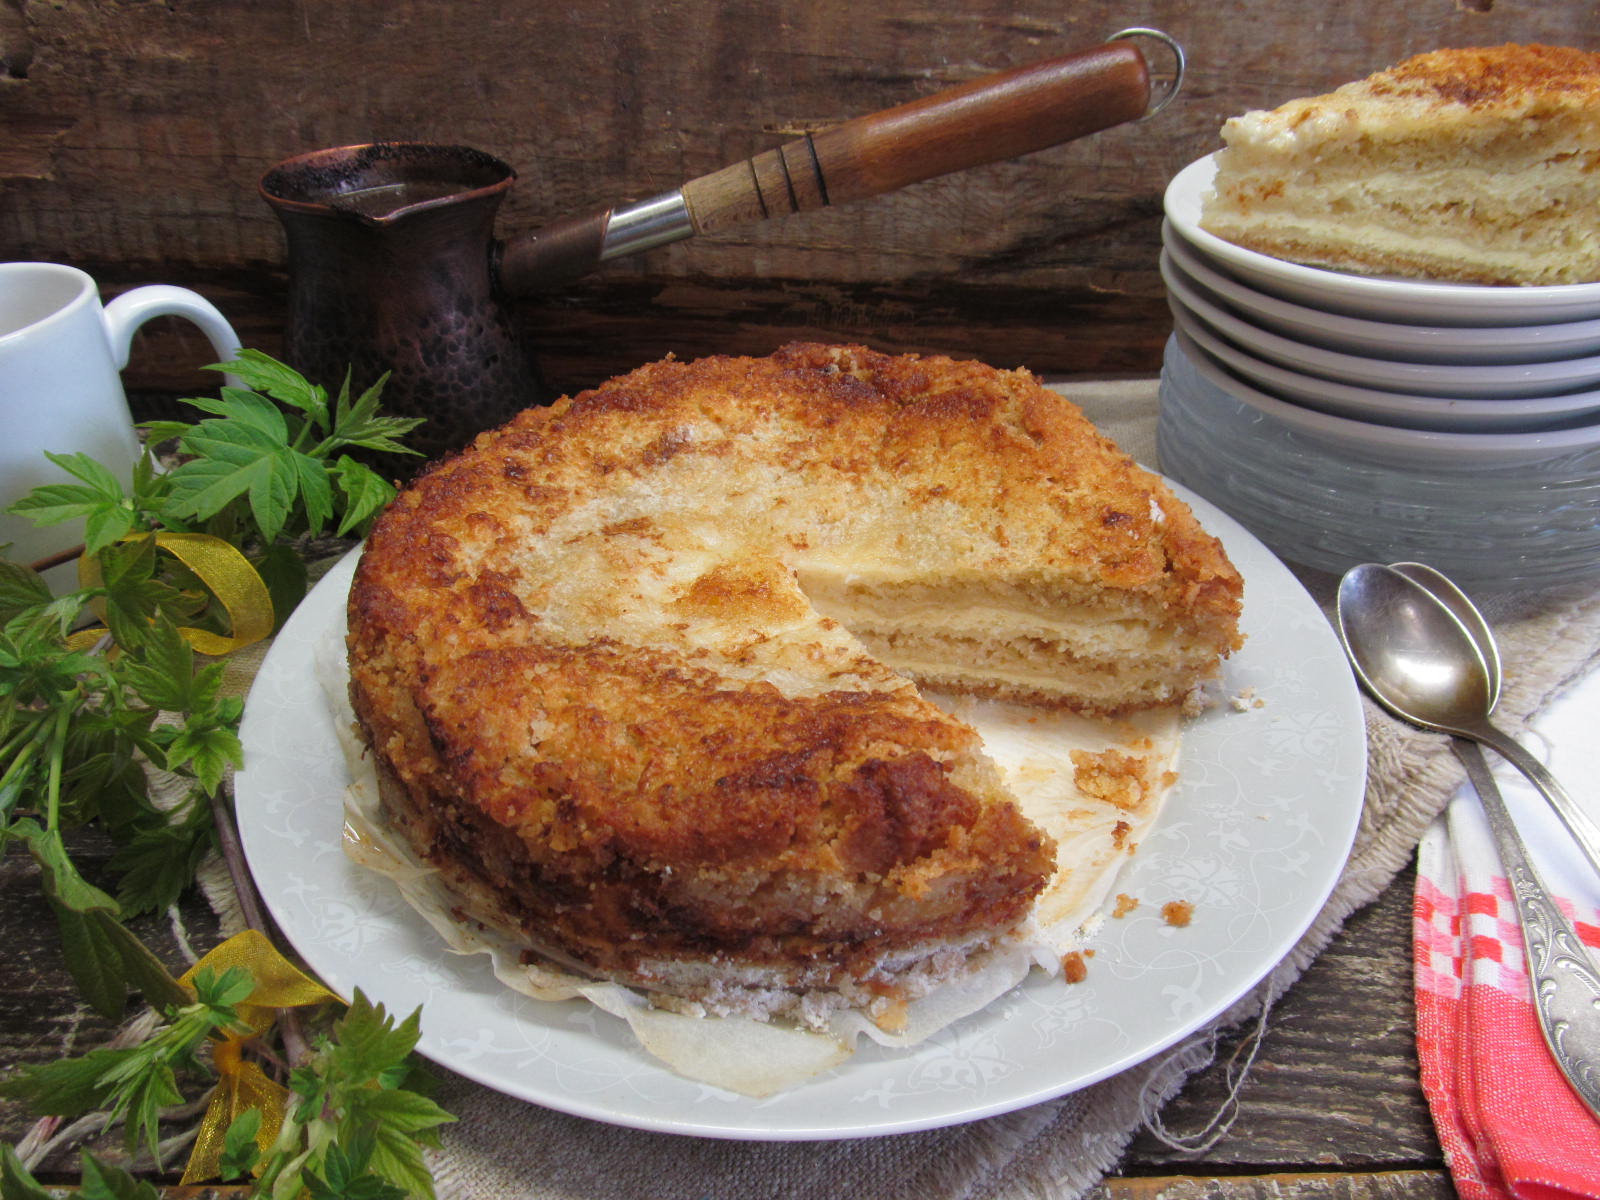 Творожный пирог из крошек рецепт – Европейская кухня: Выпечка и десерты. «Еда»